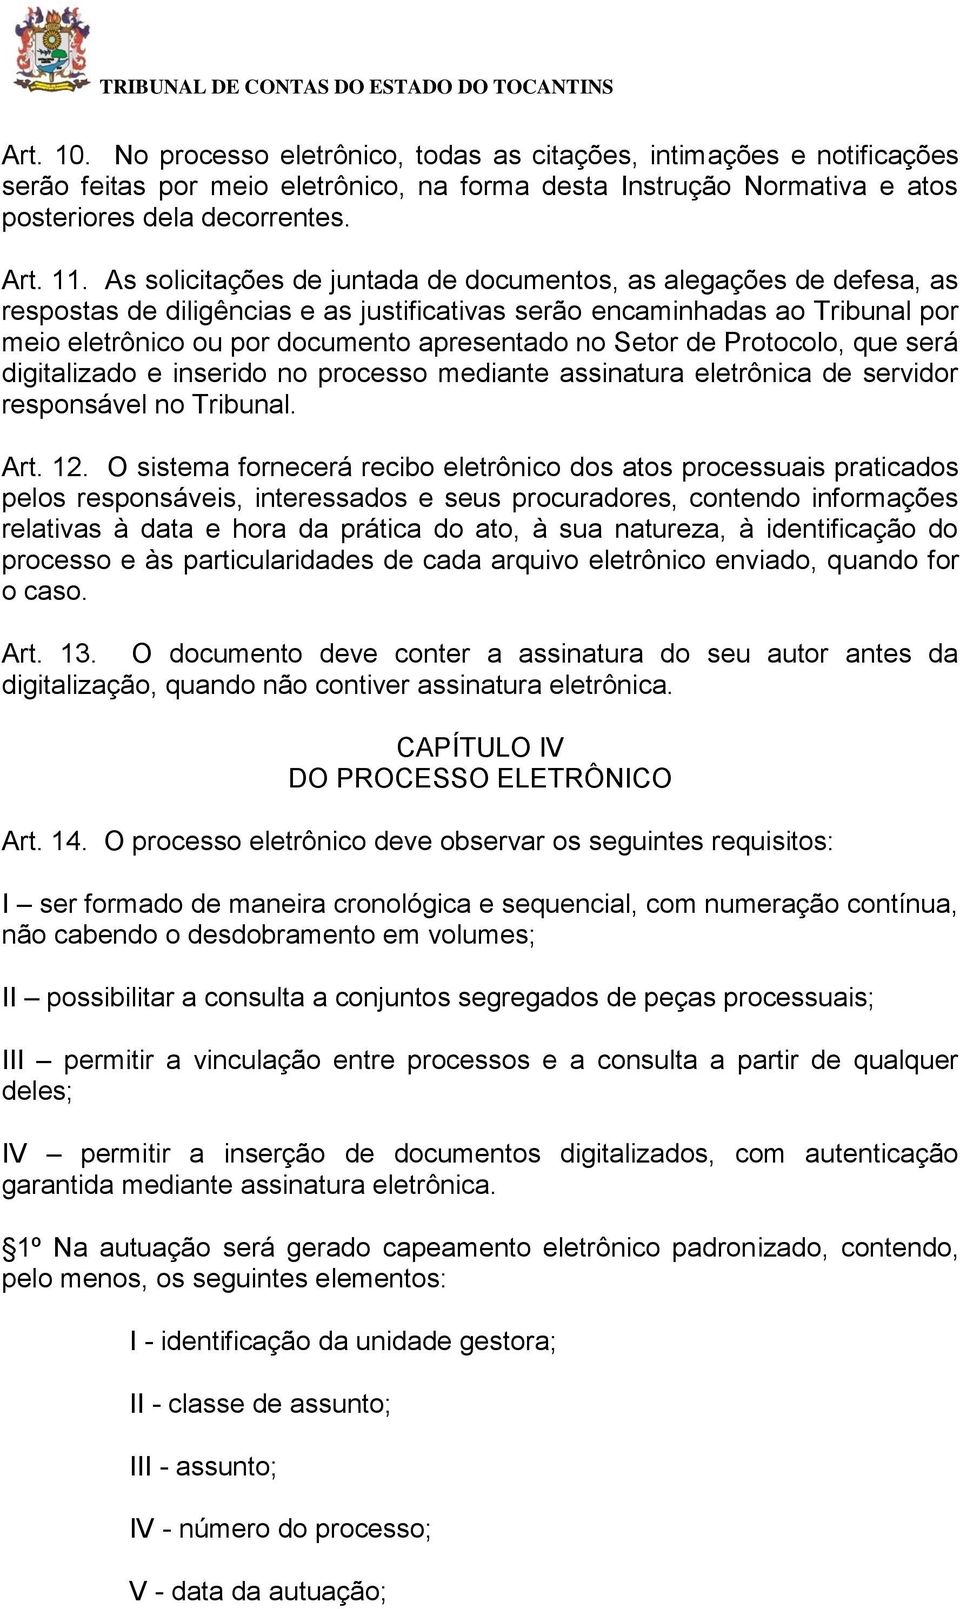 Setor de Protocolo, que será digitalizado e inserido no processo mediante assinatura eletrônica de servidor responsável no Tribunal. Art. 12.